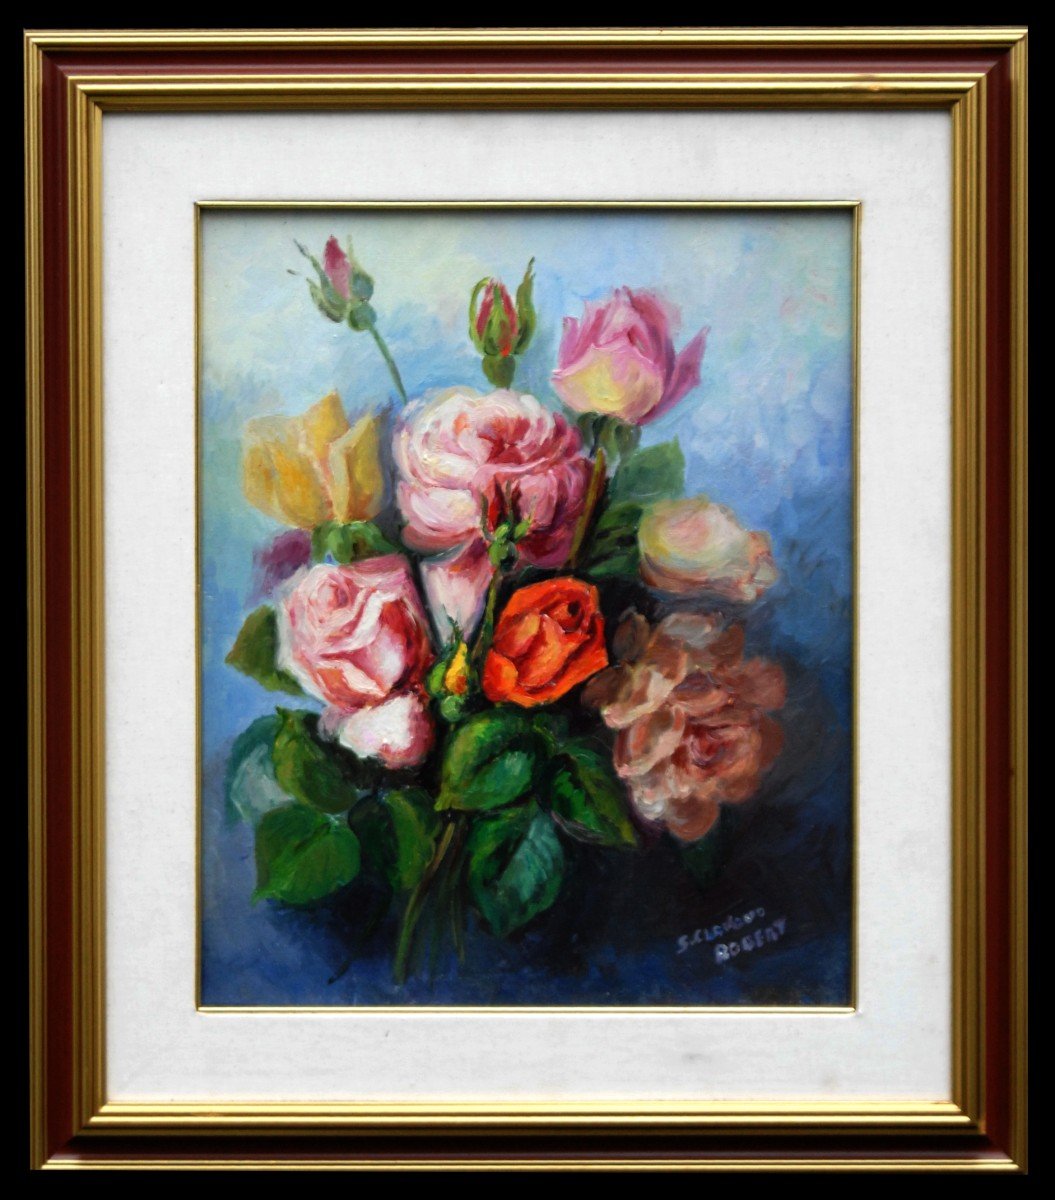 Peinture, tableau huile sur toile au bouquet de fleurs.